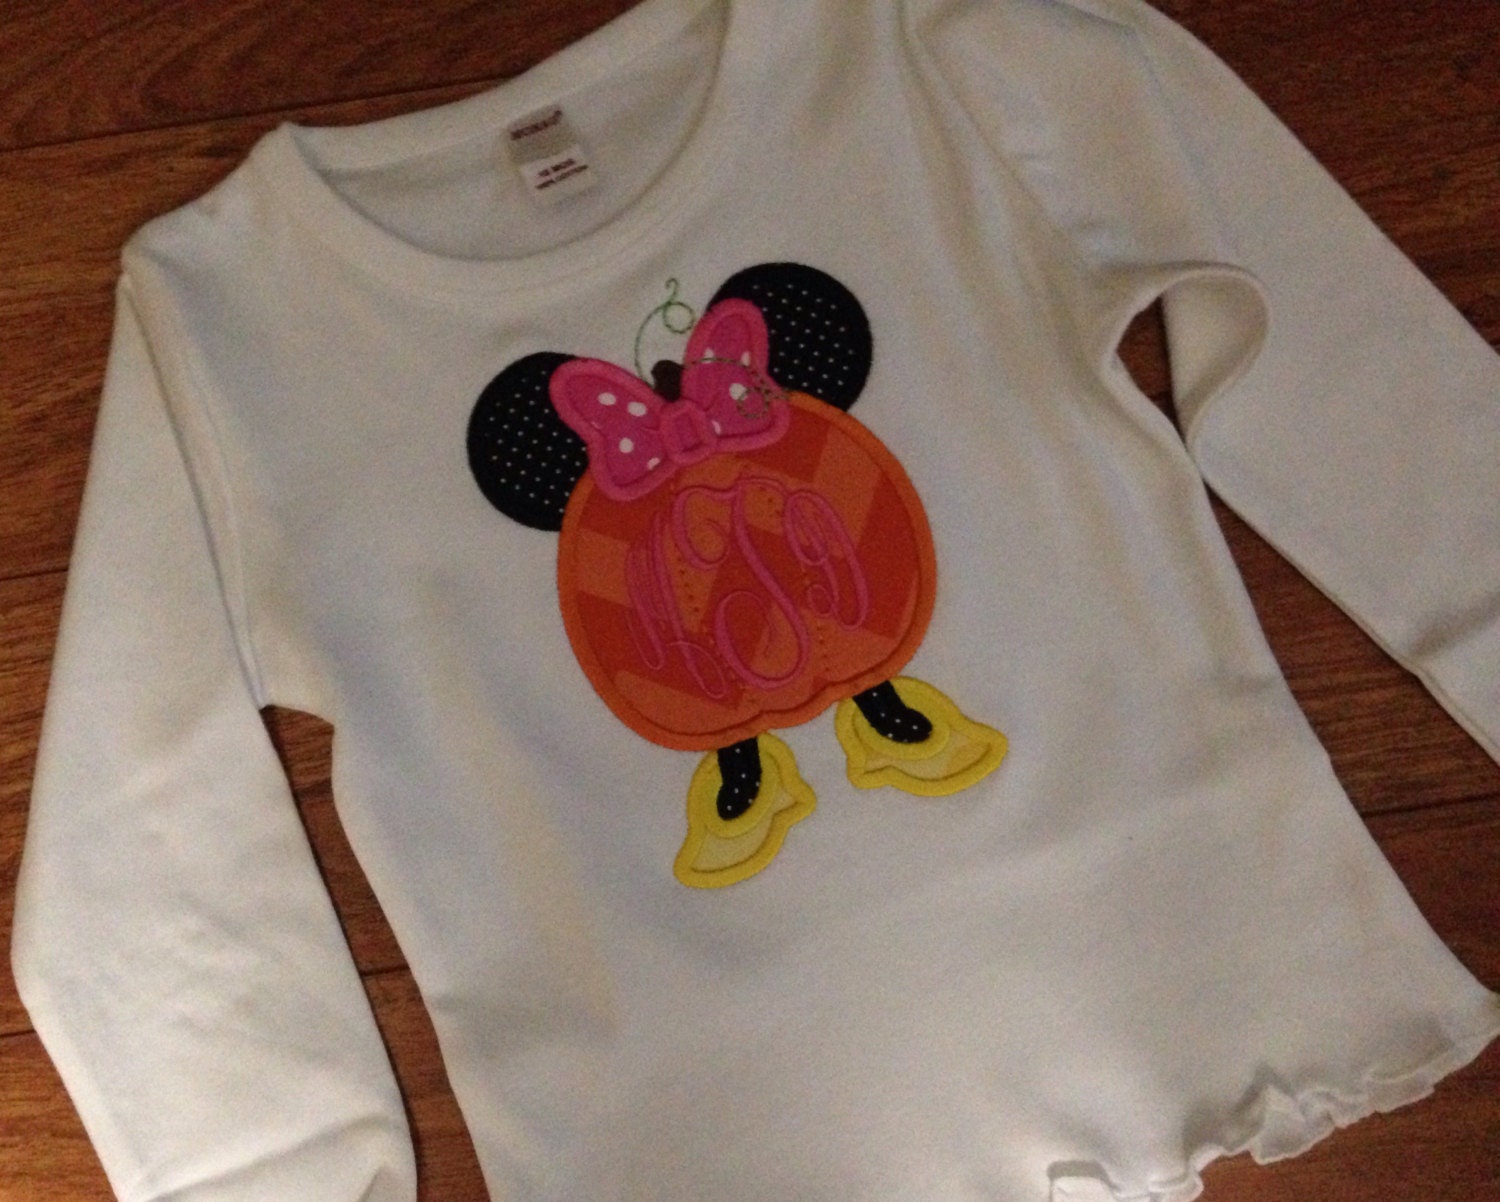 Minnie Mouse Louis Vuitton shirt - Guineashirt Premium ™ LLC